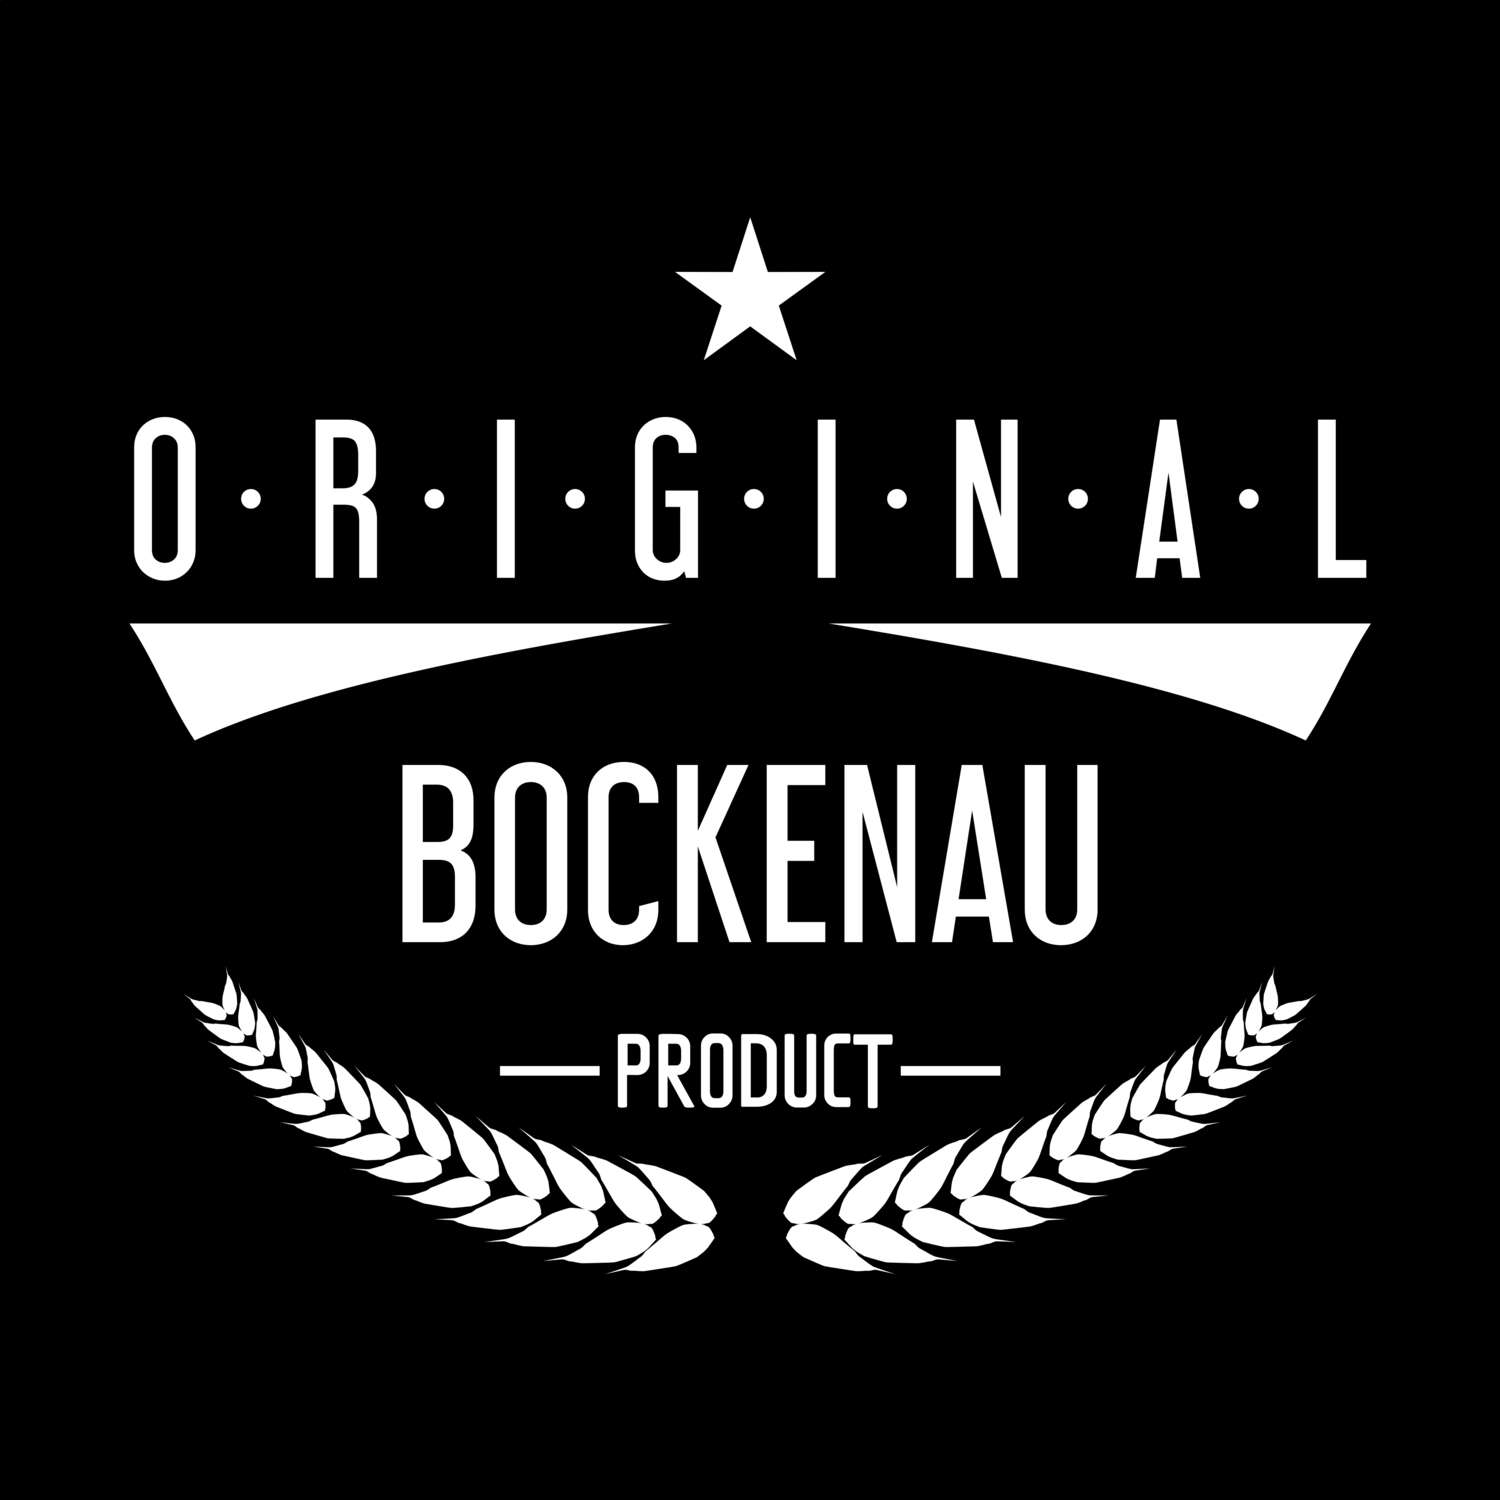 Bockenau T-Shirt »Original Product«